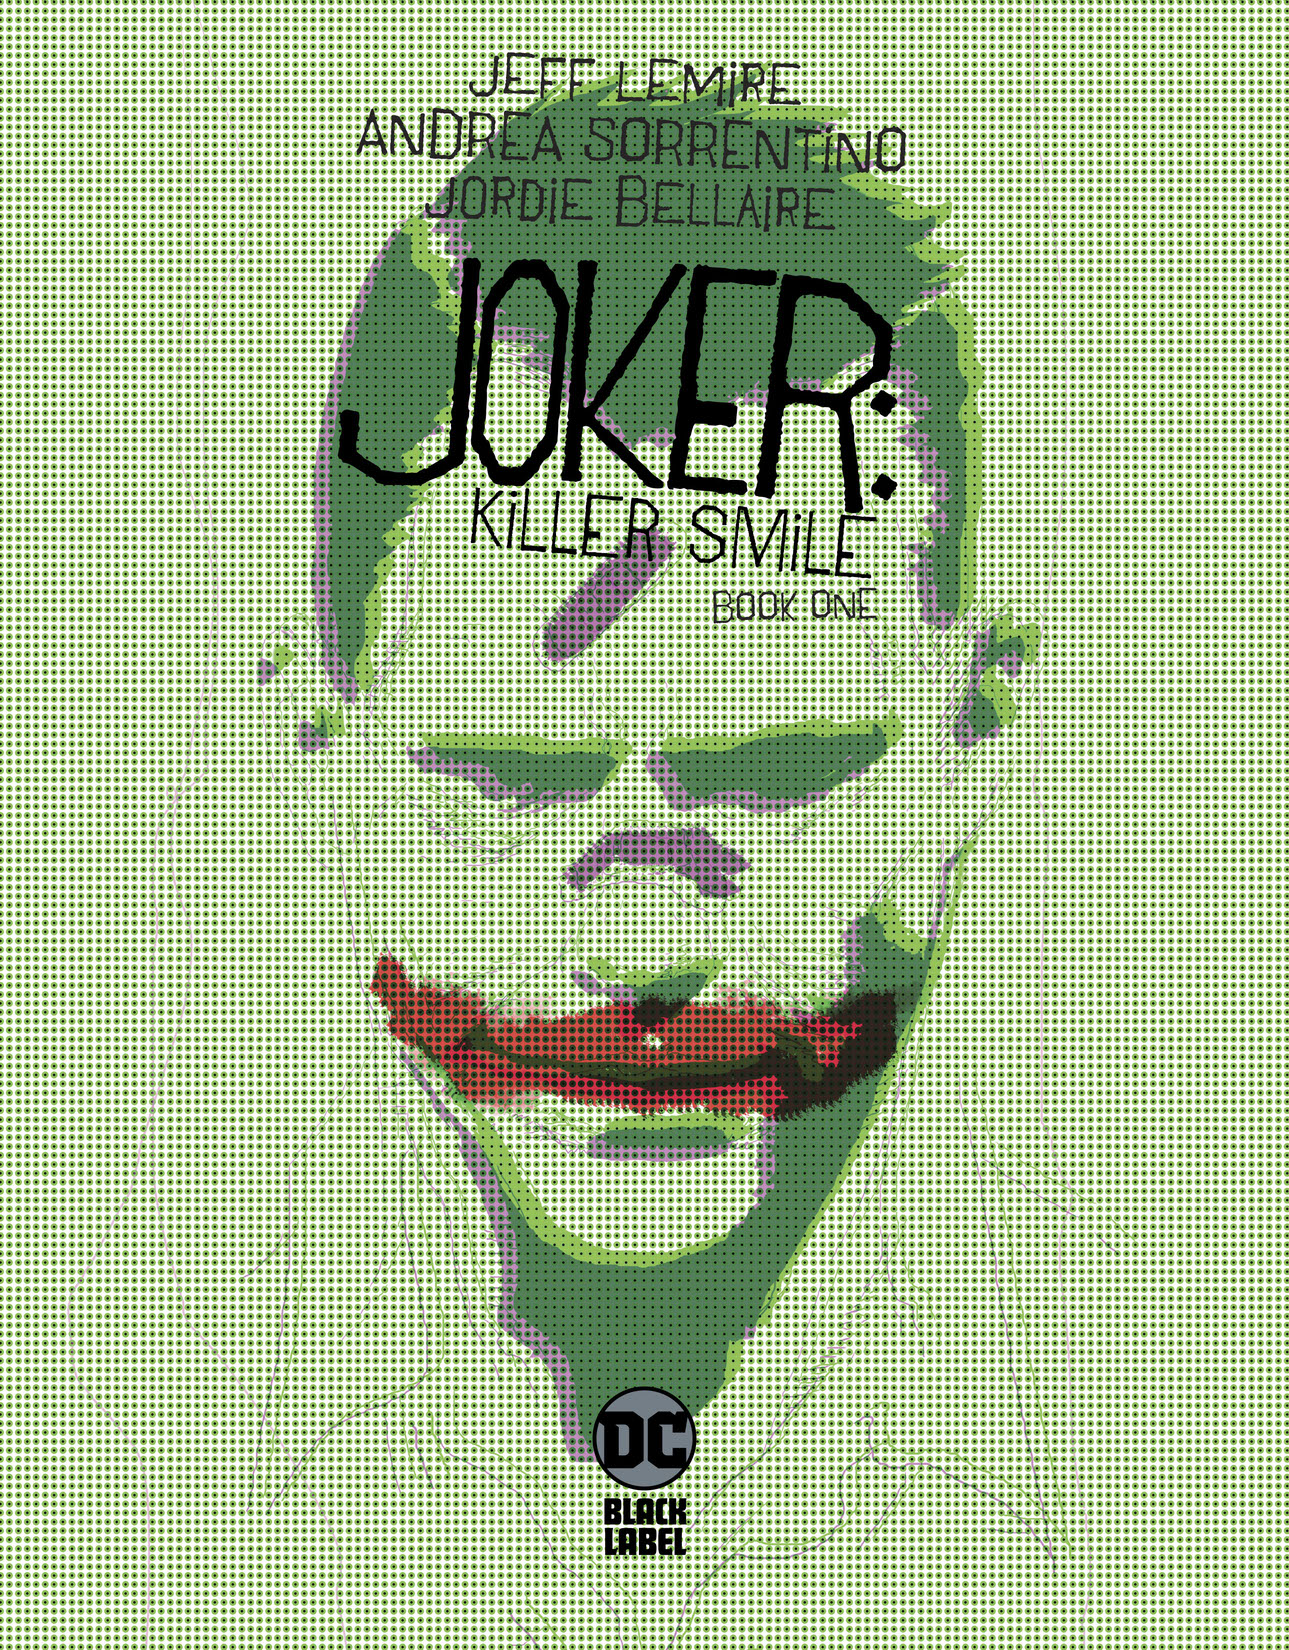 Joker: Killer Smile #1 preview images